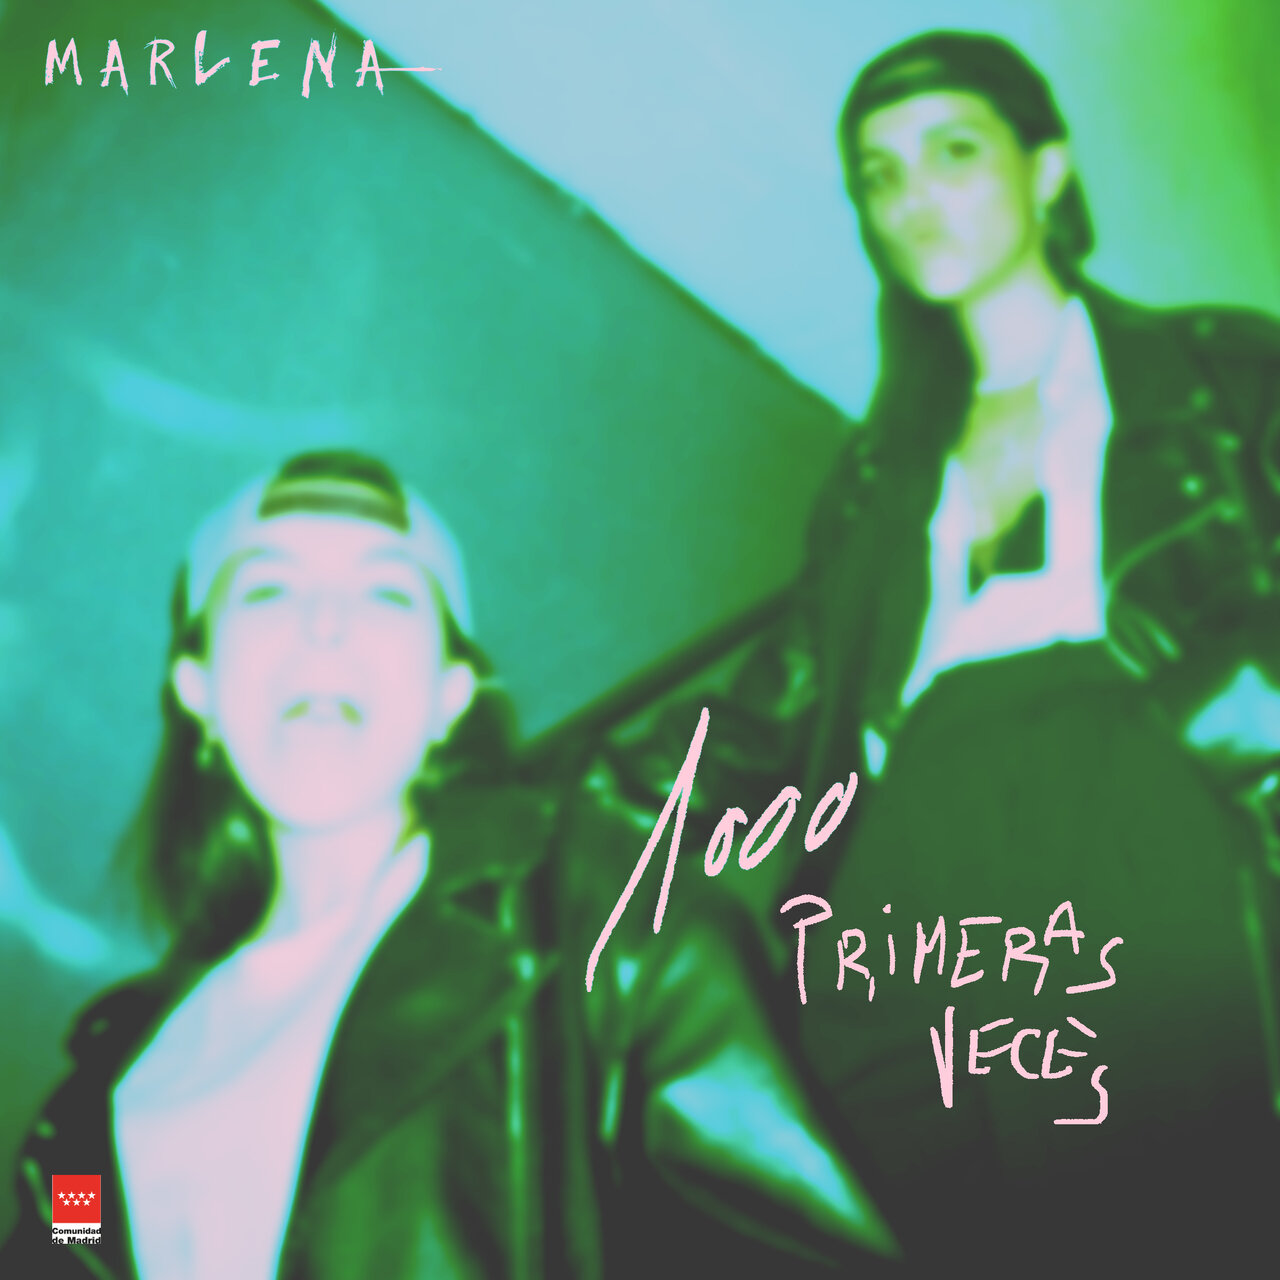 Marlena — 1000 Primeras Veces cover artwork